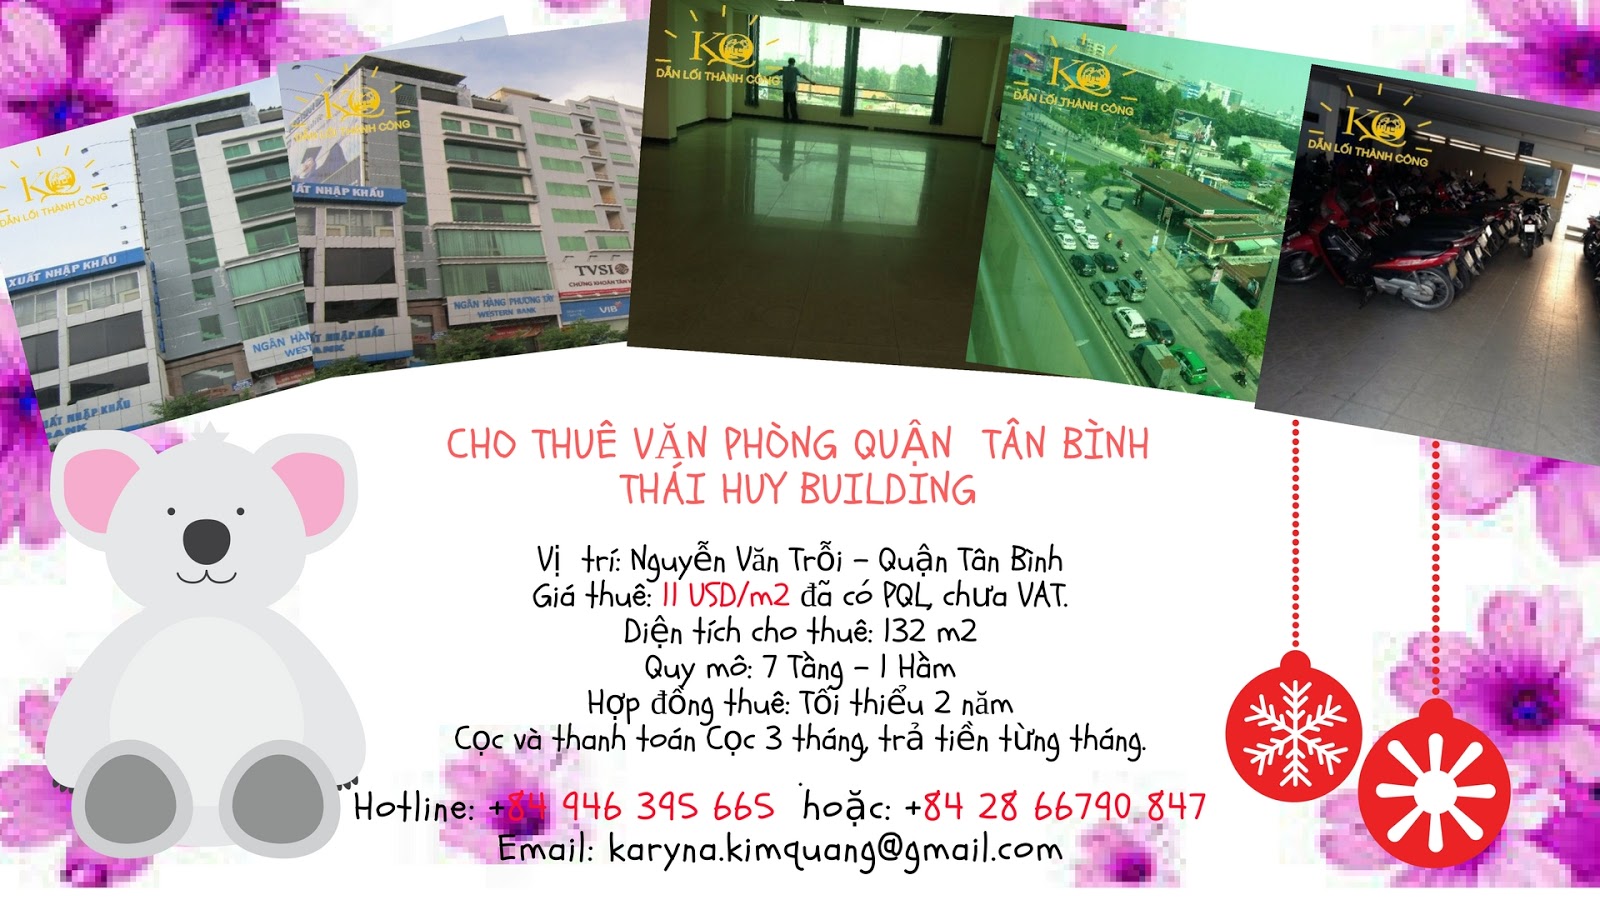 Thái Huy Building quận Tân Bình